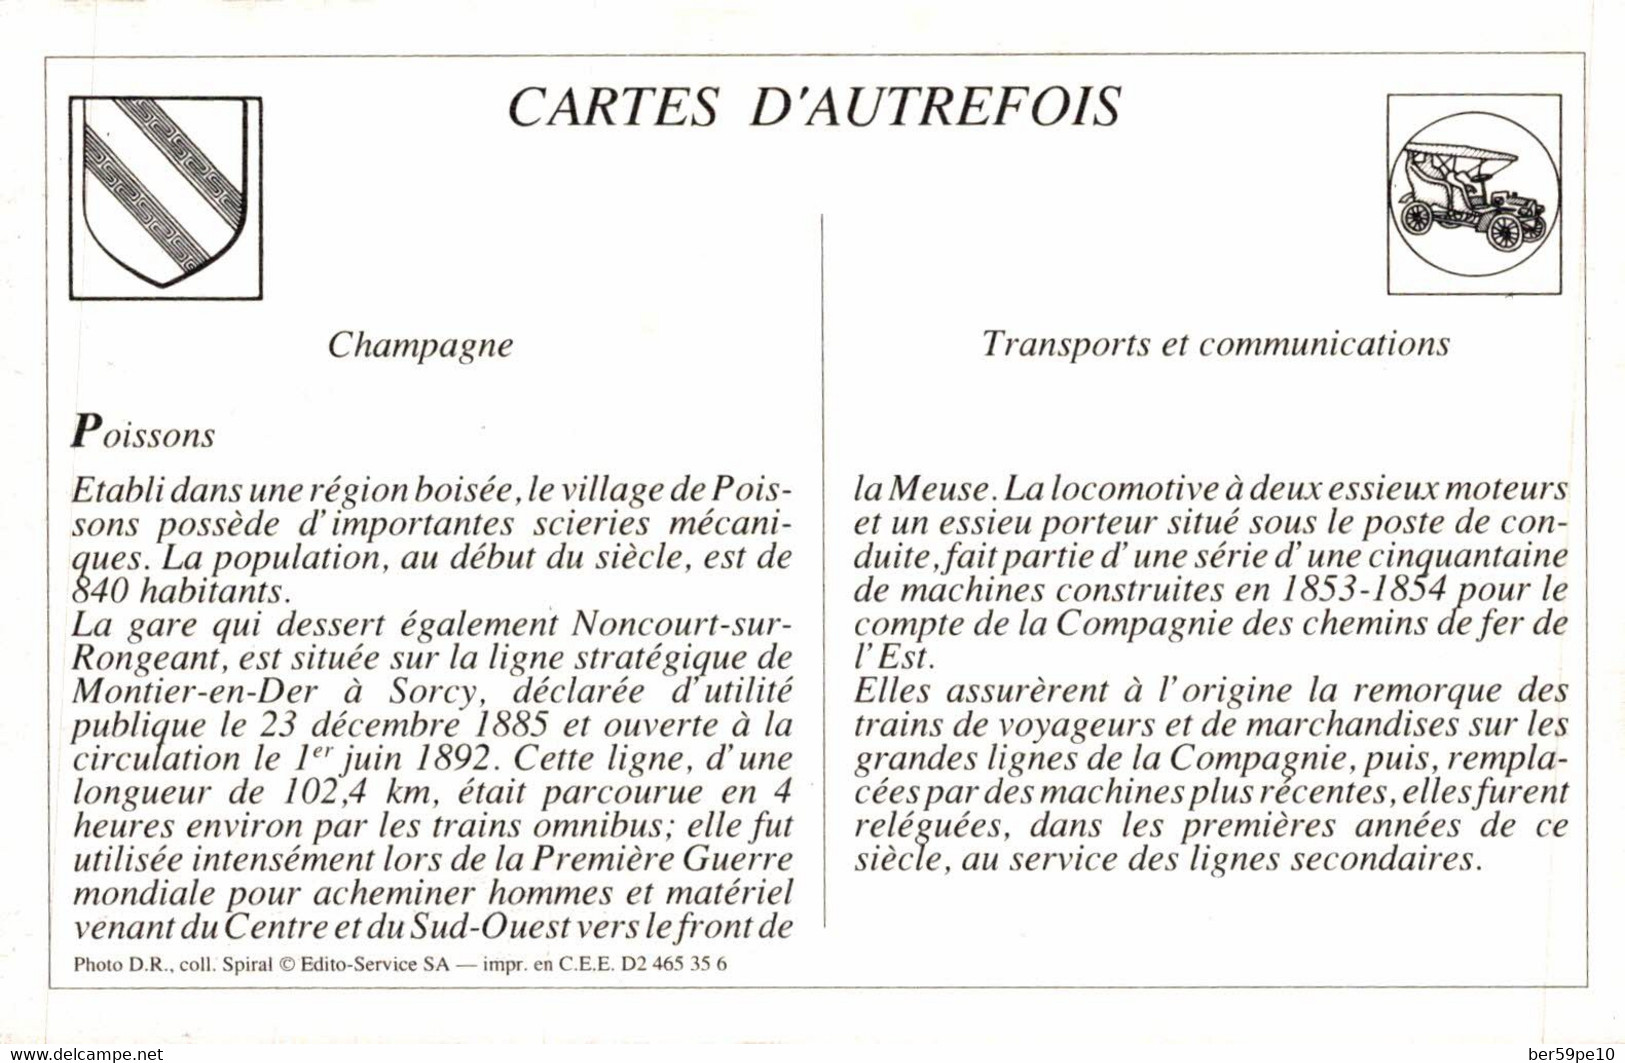 CARTE D'AUTREFOIS TRANSPORTS ET COMMUNICATIONS CHAMPAGNE POISSONS - Champagne - Ardenne